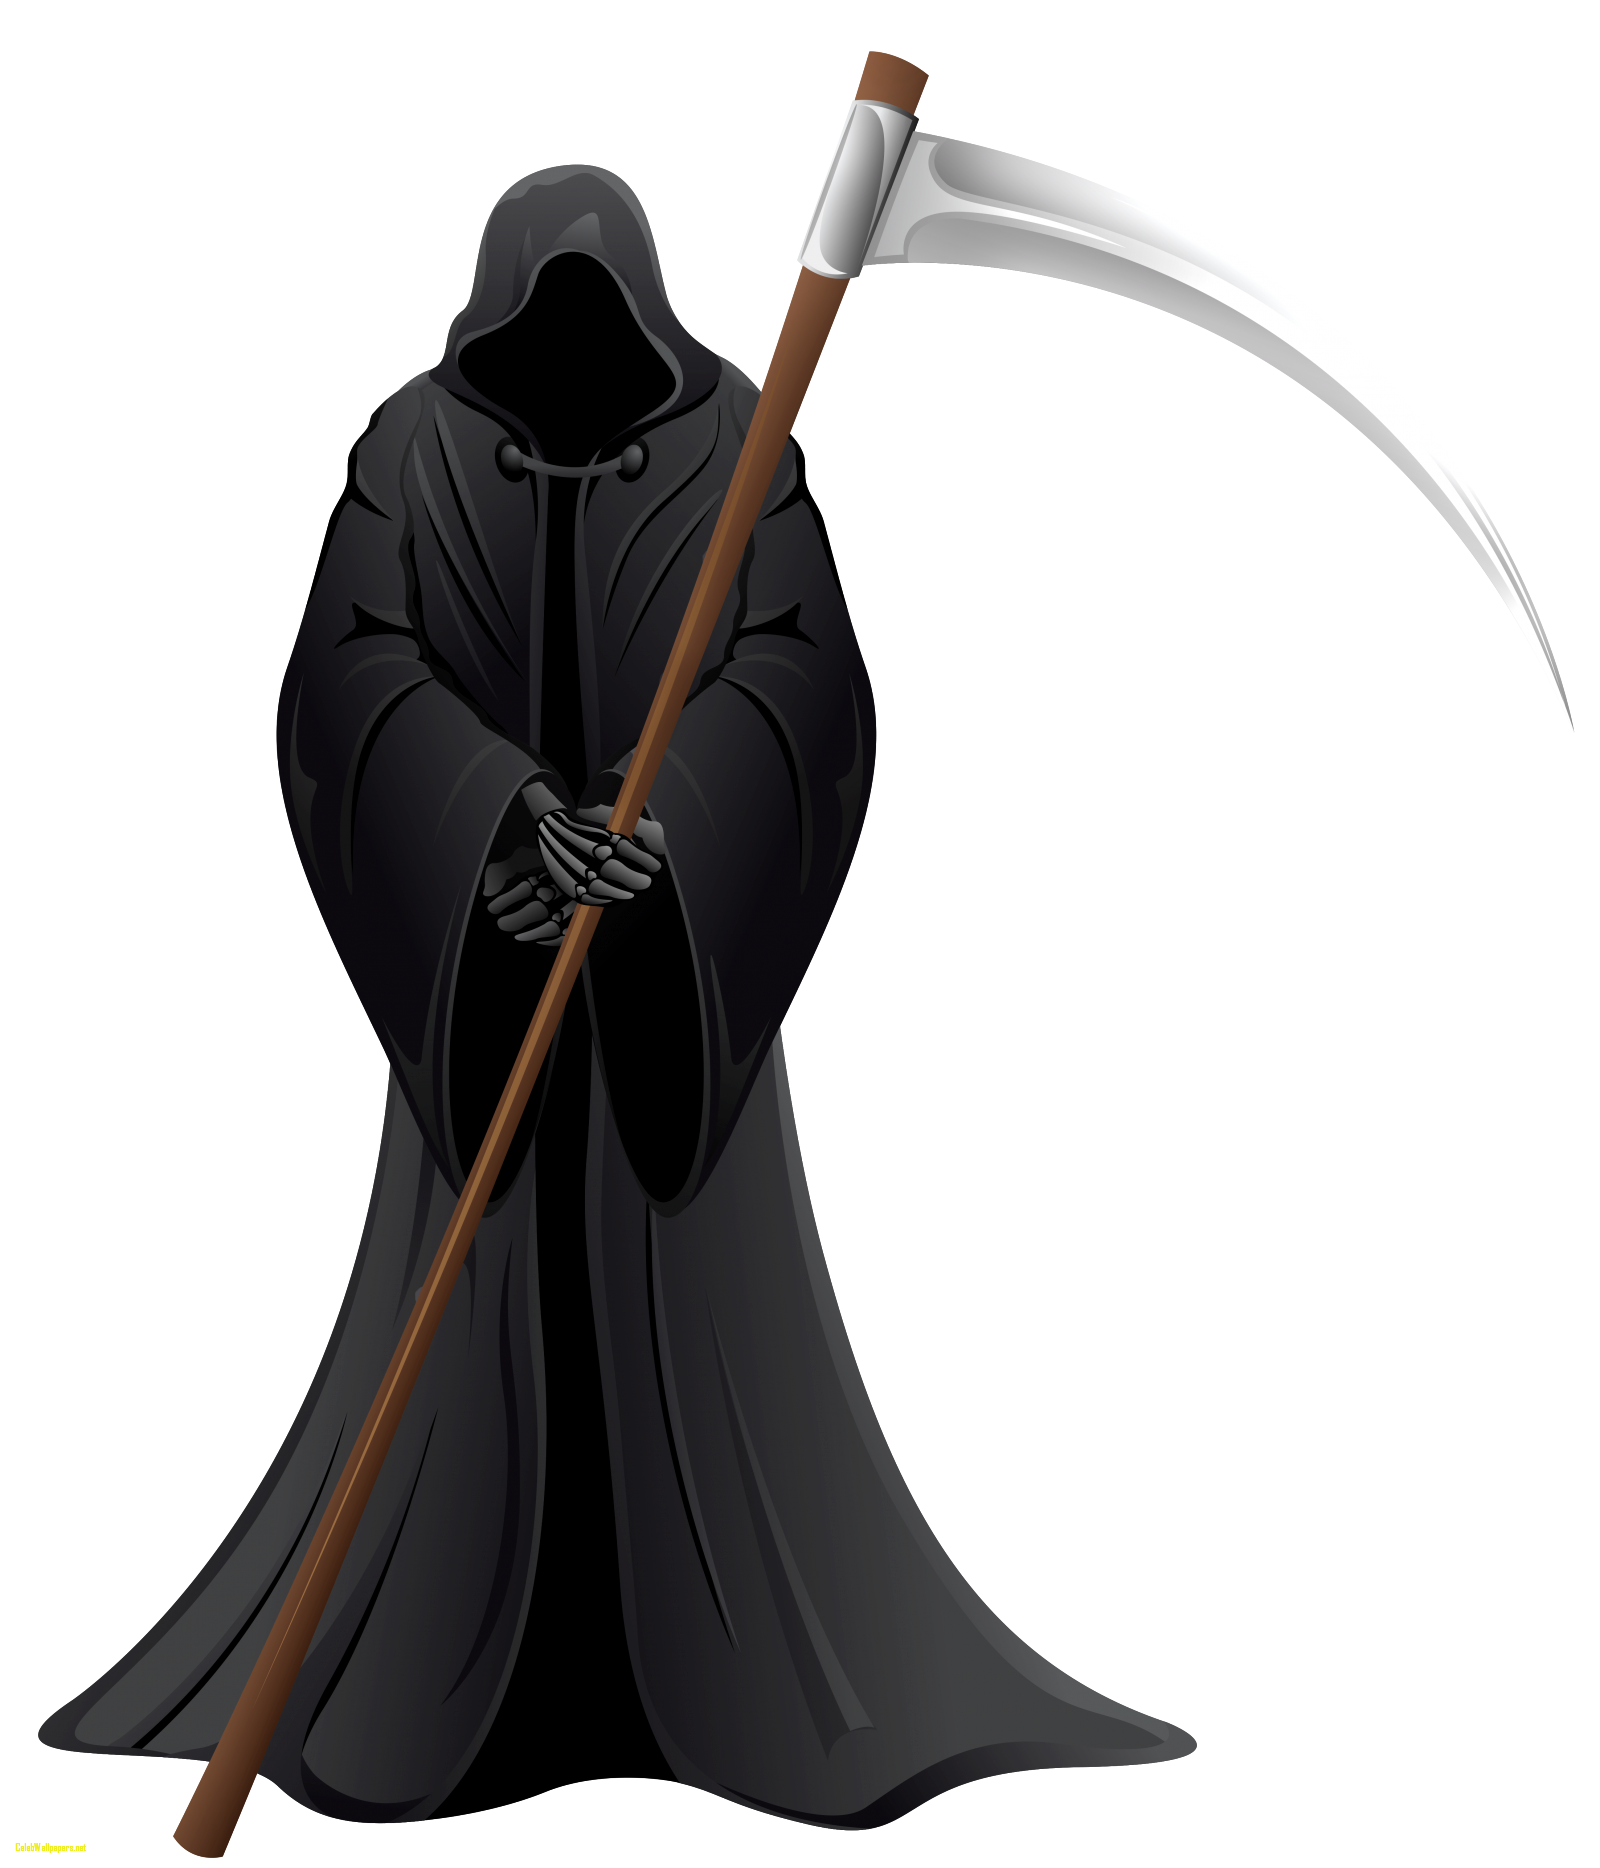 Grim reaper minimalist